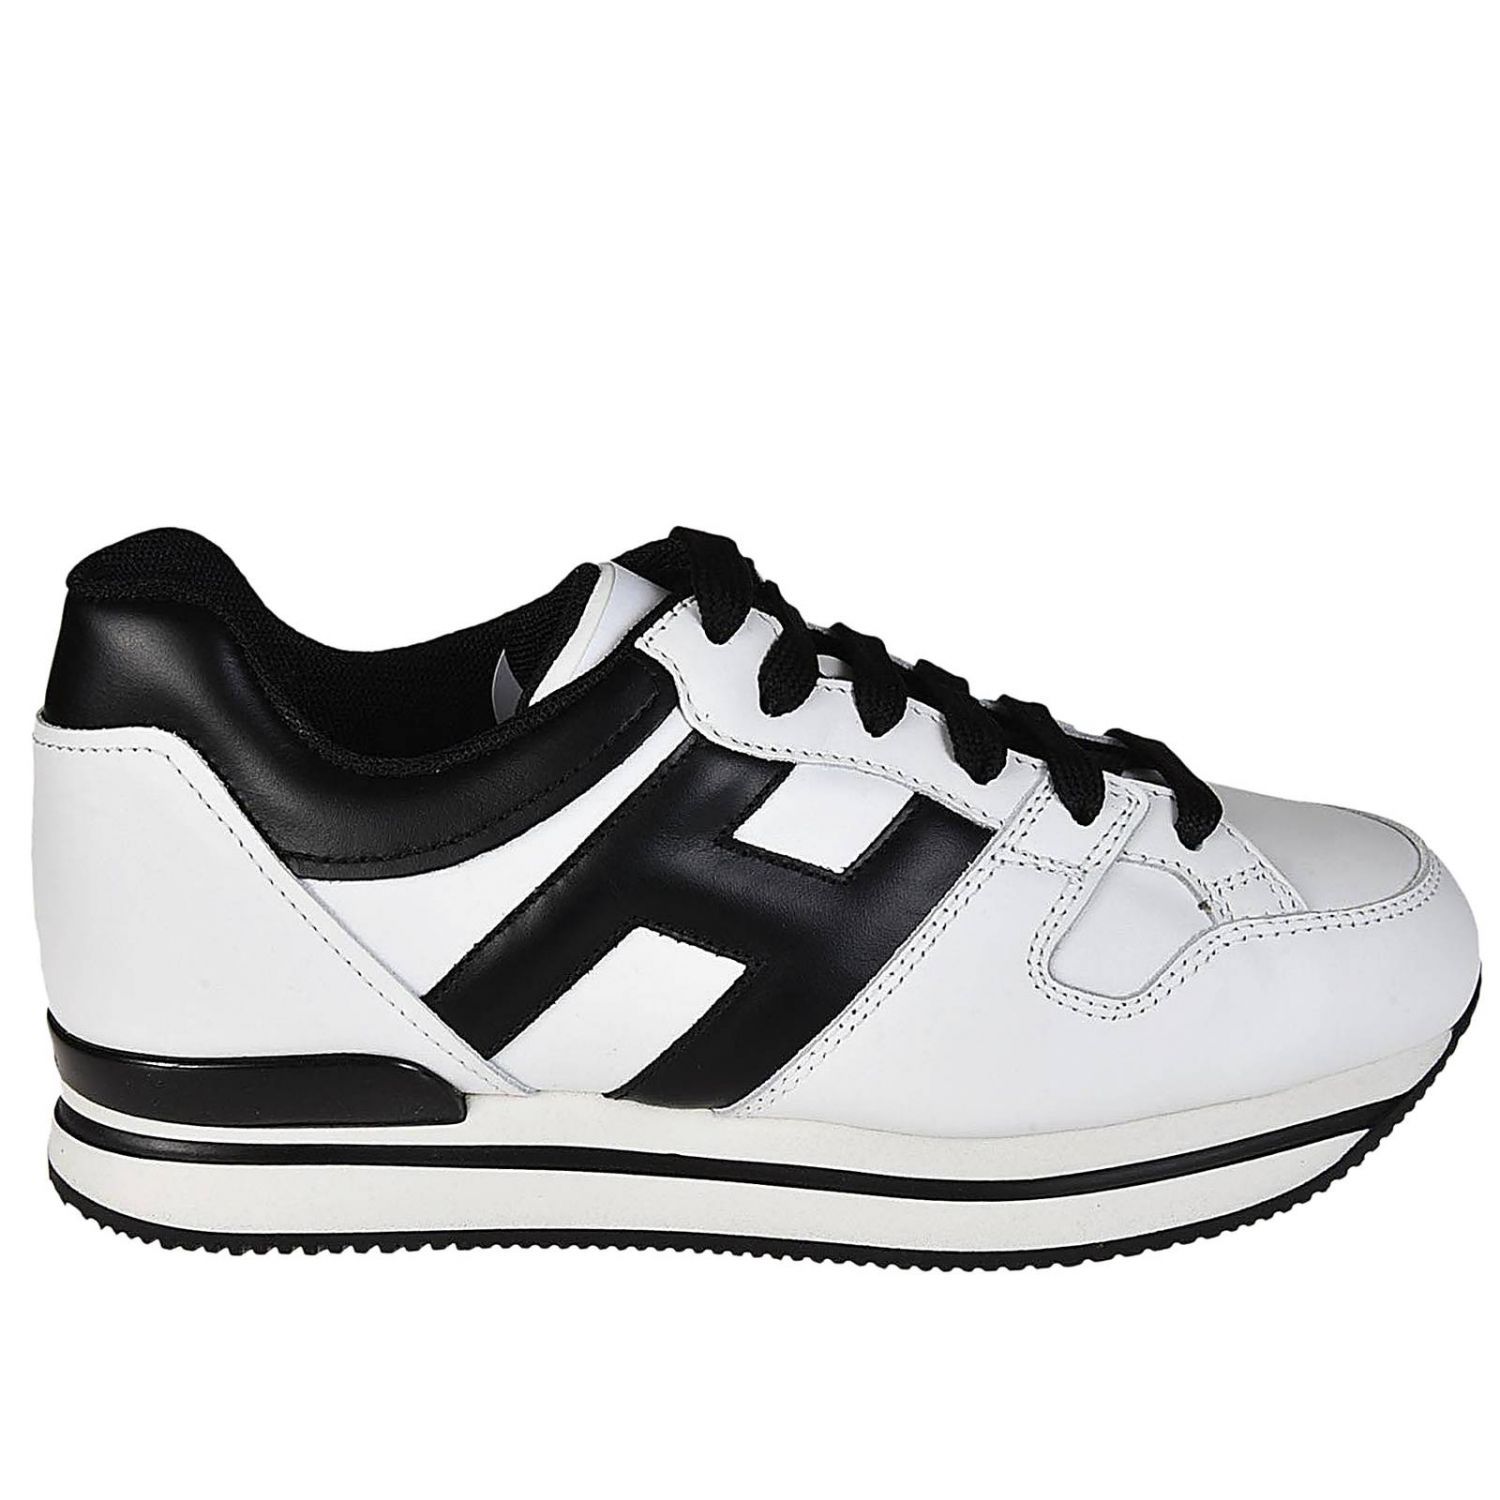 HOGAN: Shoes women | Sneakers Hogan Women White | Sneakers Hogan ...